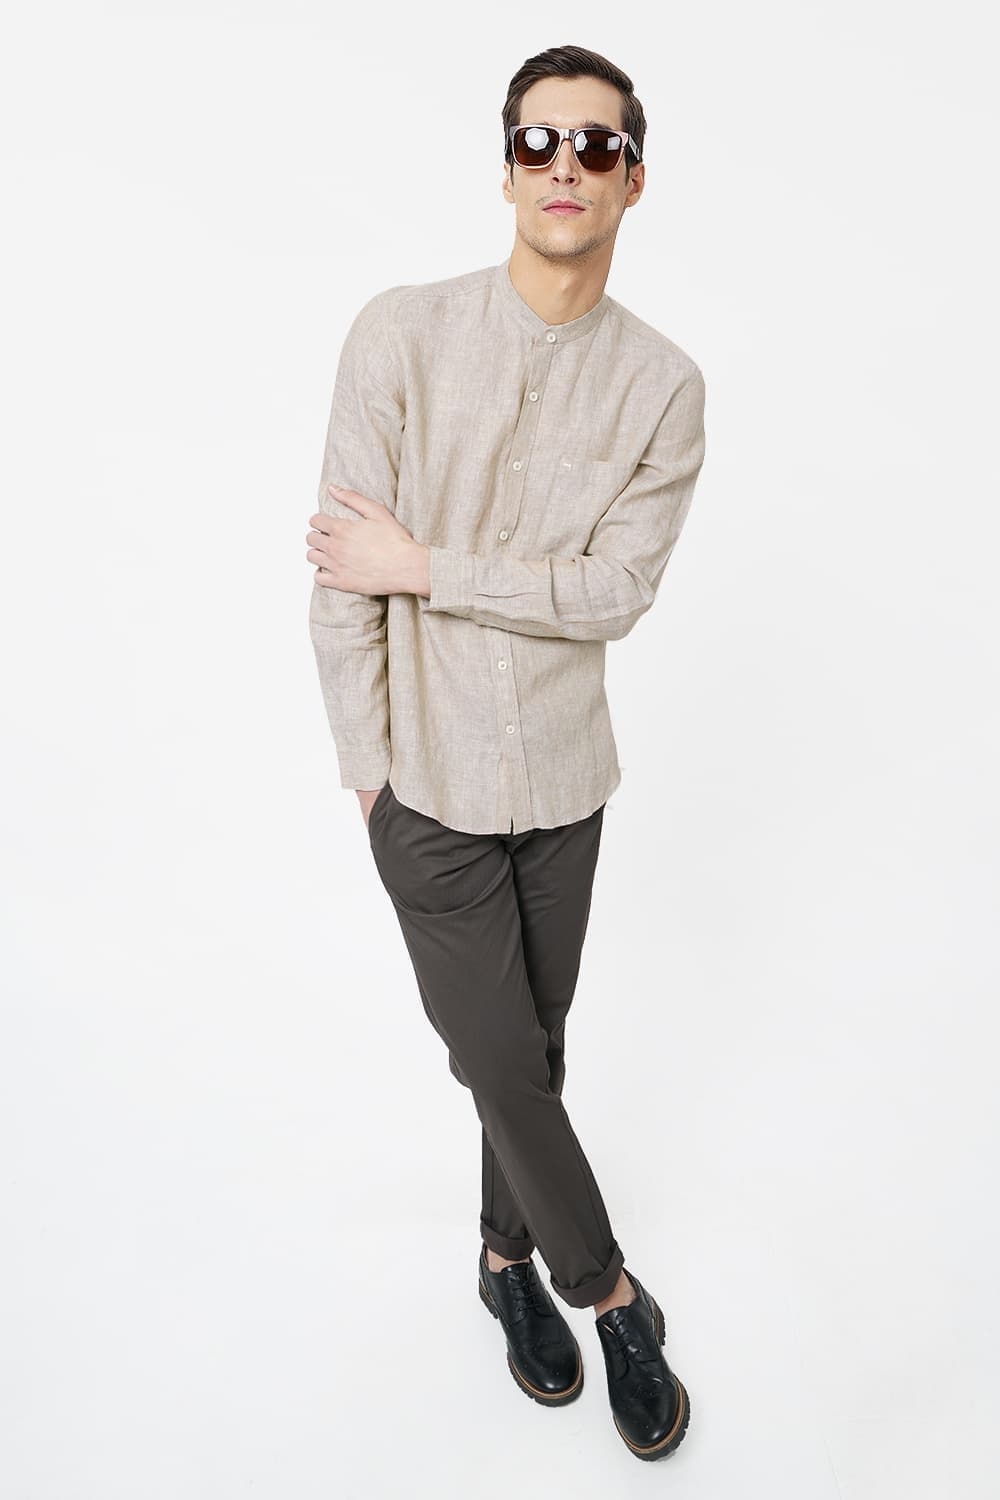 Basics | Basics Slim Fit Beige Linen Shirt-20BSH46439